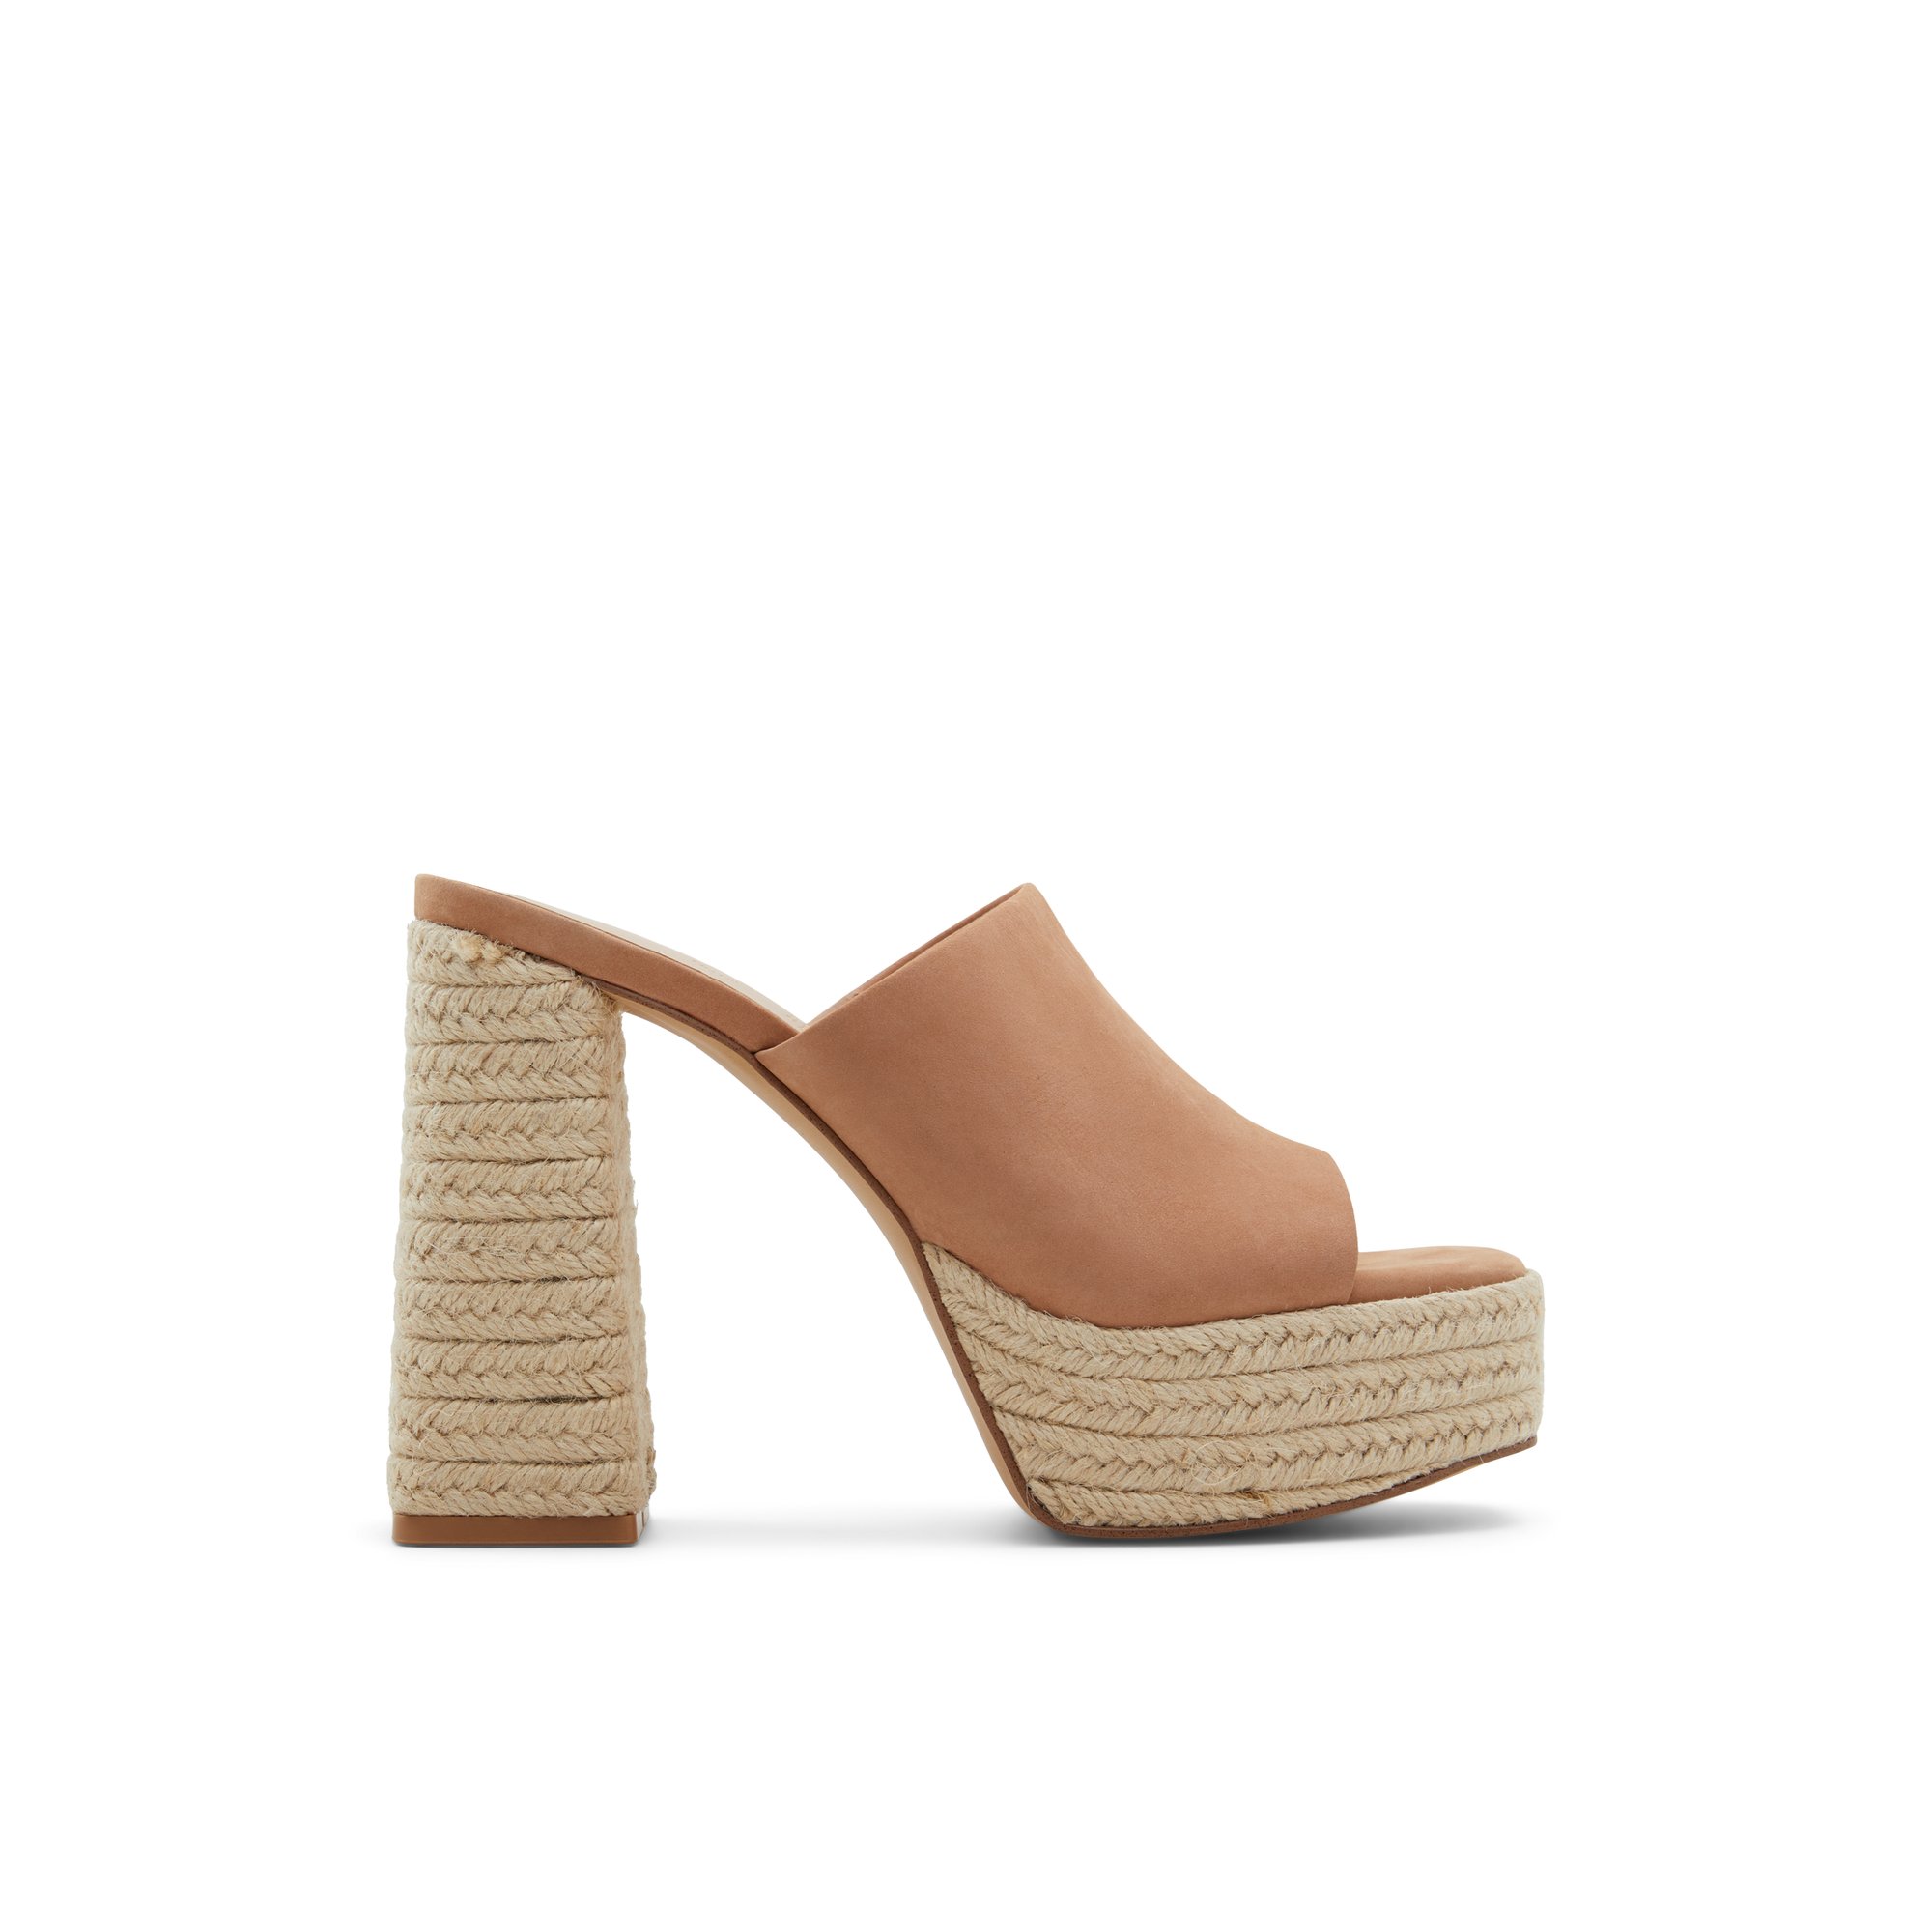 ALDO Arnensee - Women's Sandals Heeled Mules - Brown